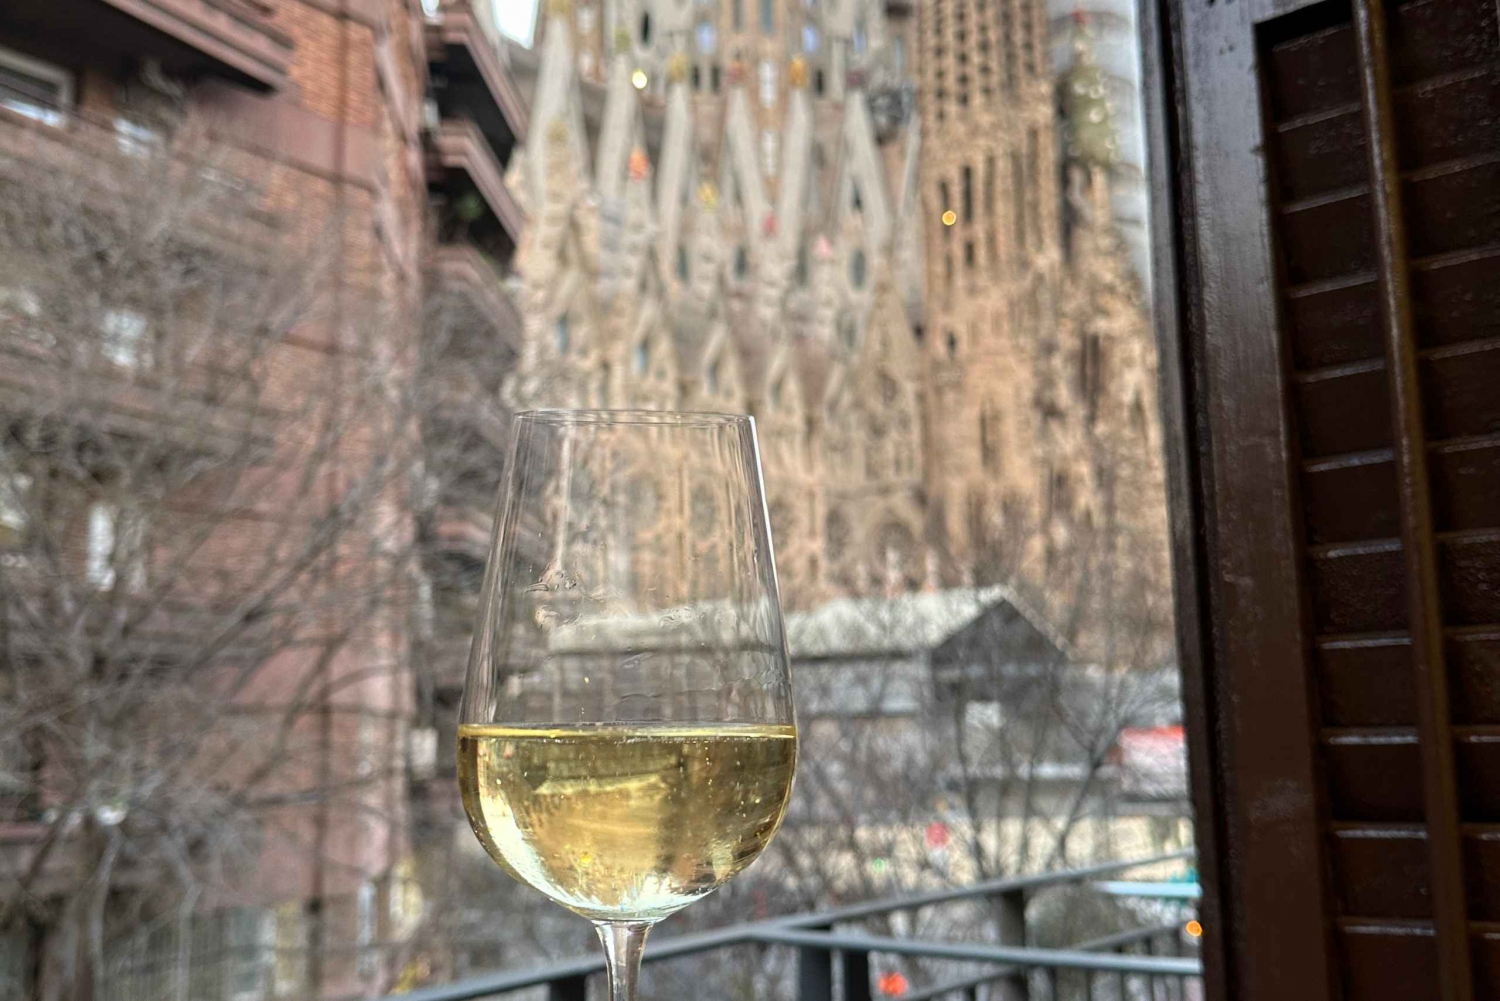 Barcelona: Cata de vinos med udsigt til Sagrada Familia